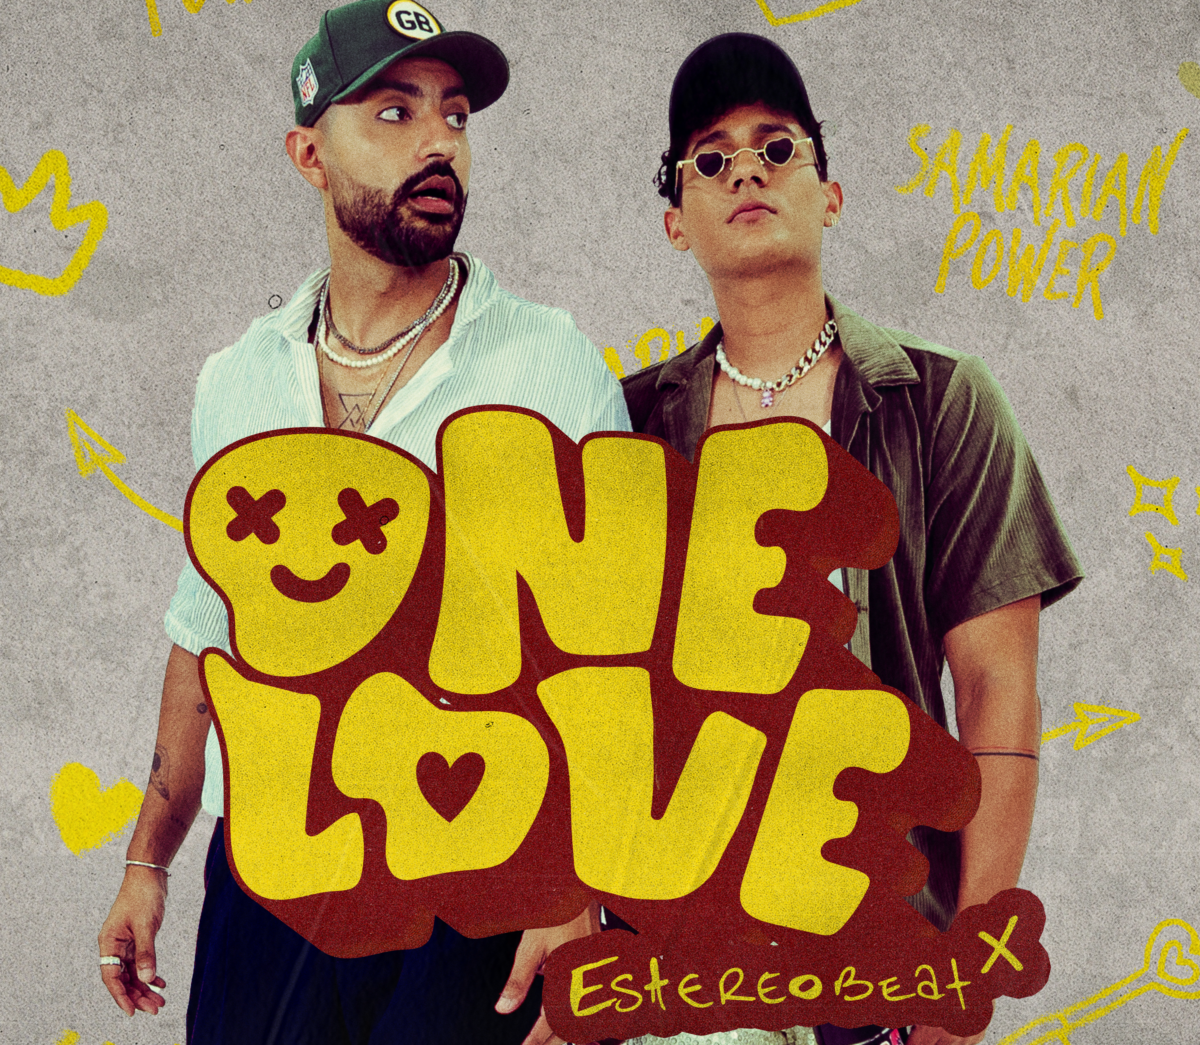 estereobeat innovacion y tradicion musical en el lanzamiento de one love